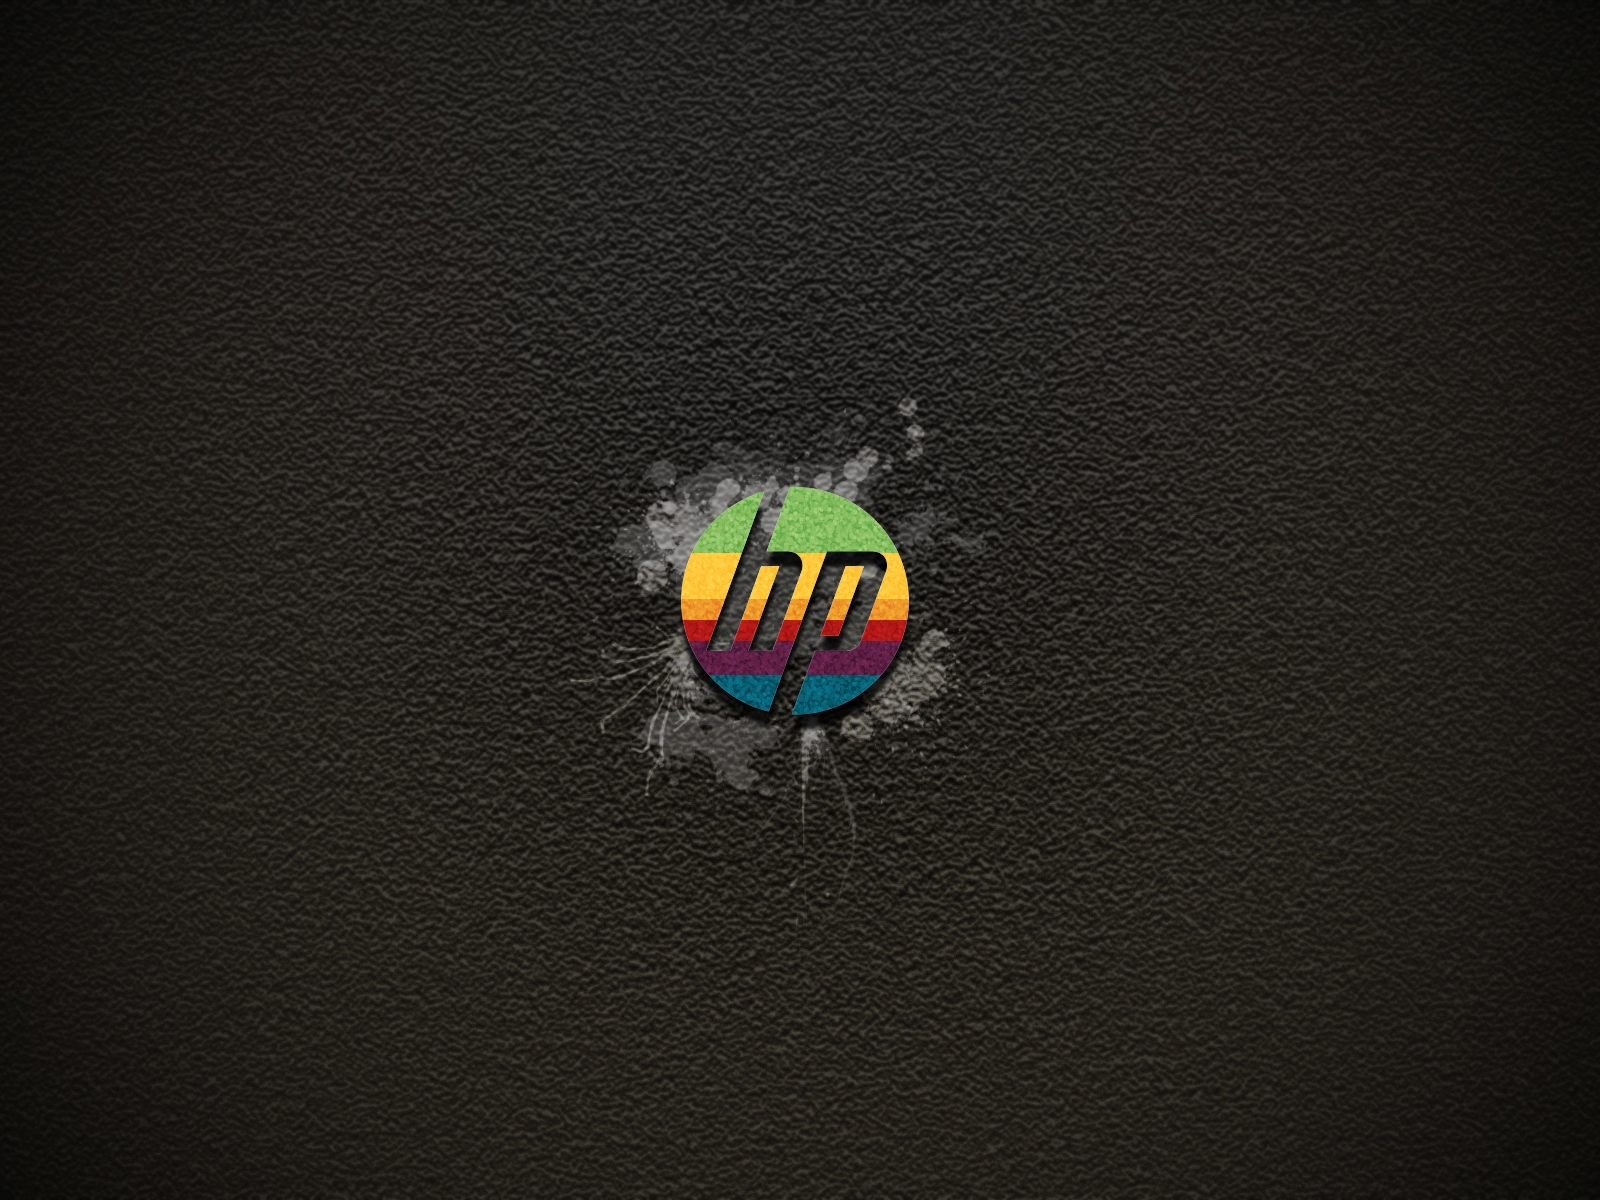 Hp Color Logo Wallpaper Stock Photos